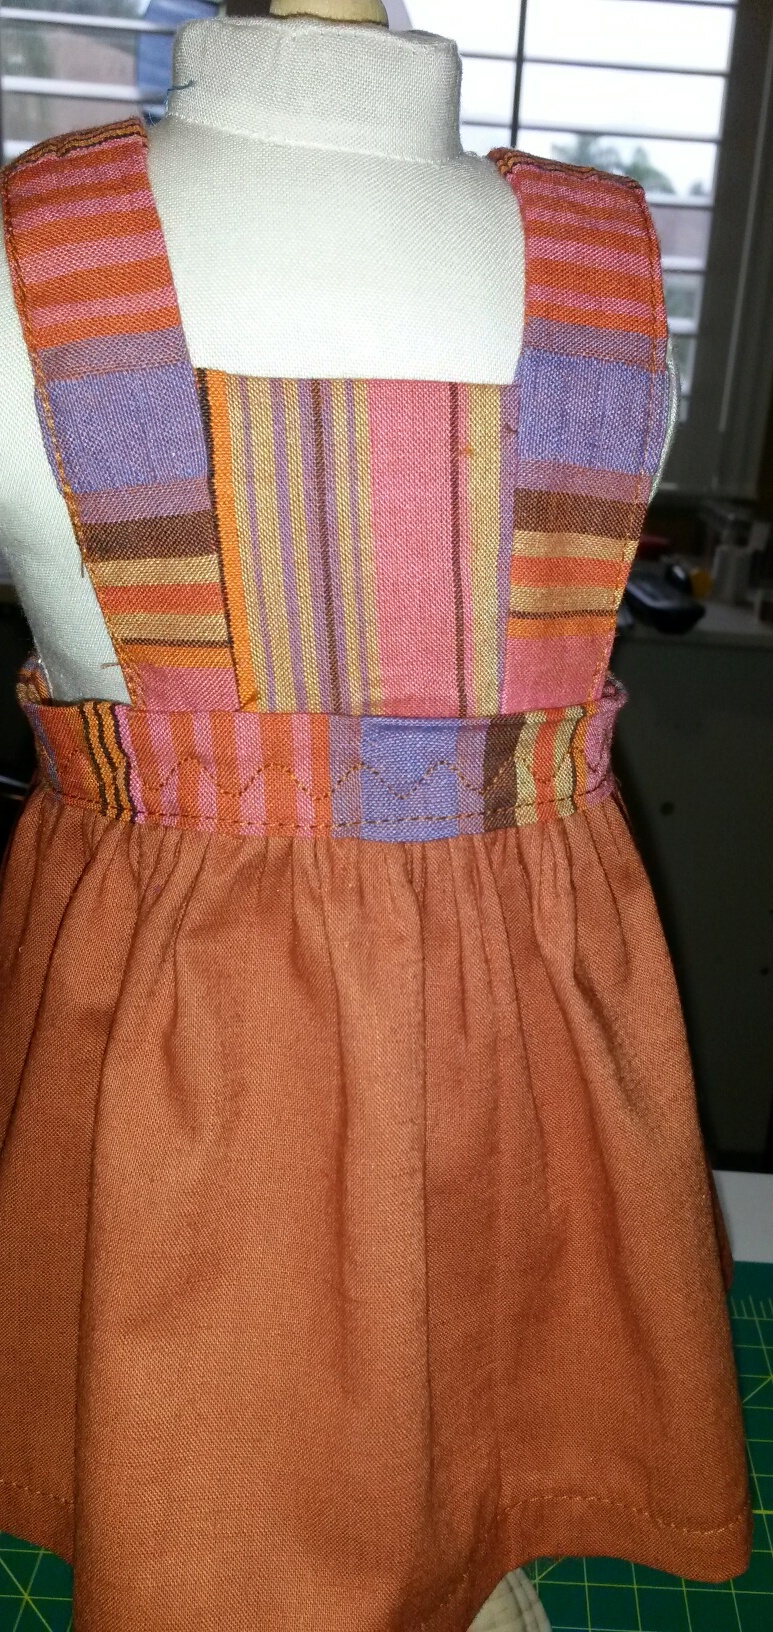 sharon henry pinafore dress pattern